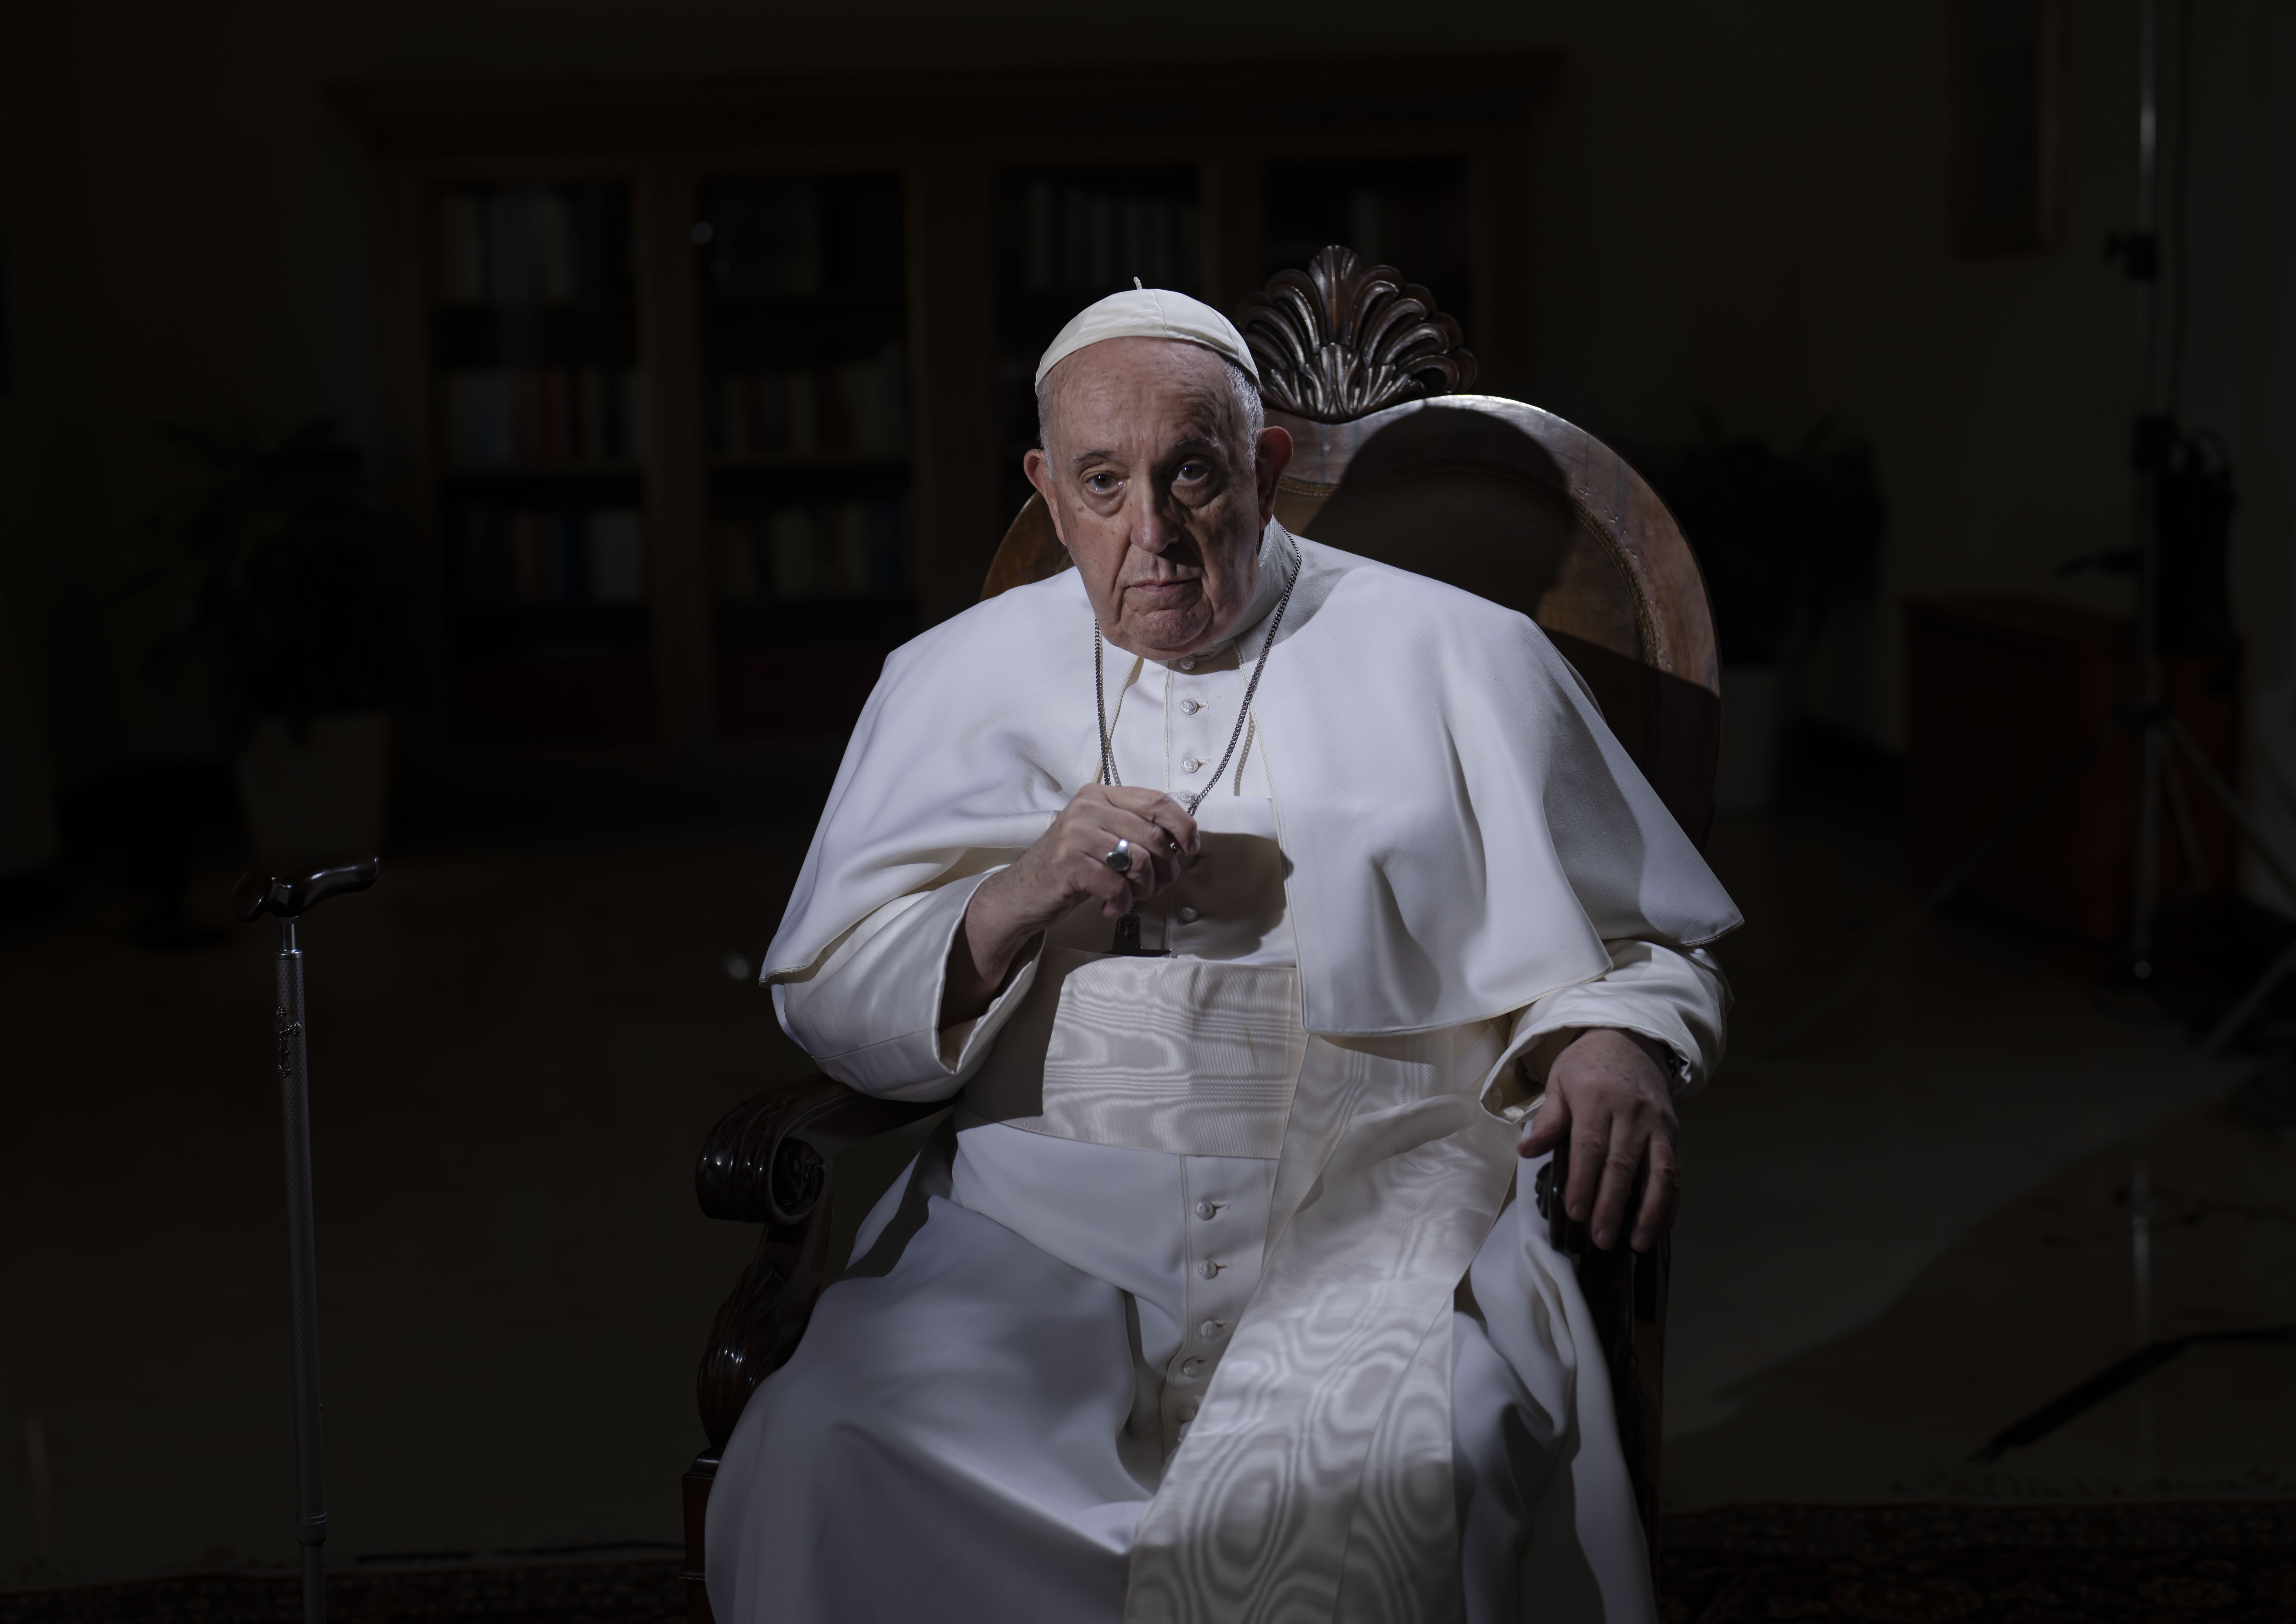 El papa Francisco: “La homosexualidad no es un delito”